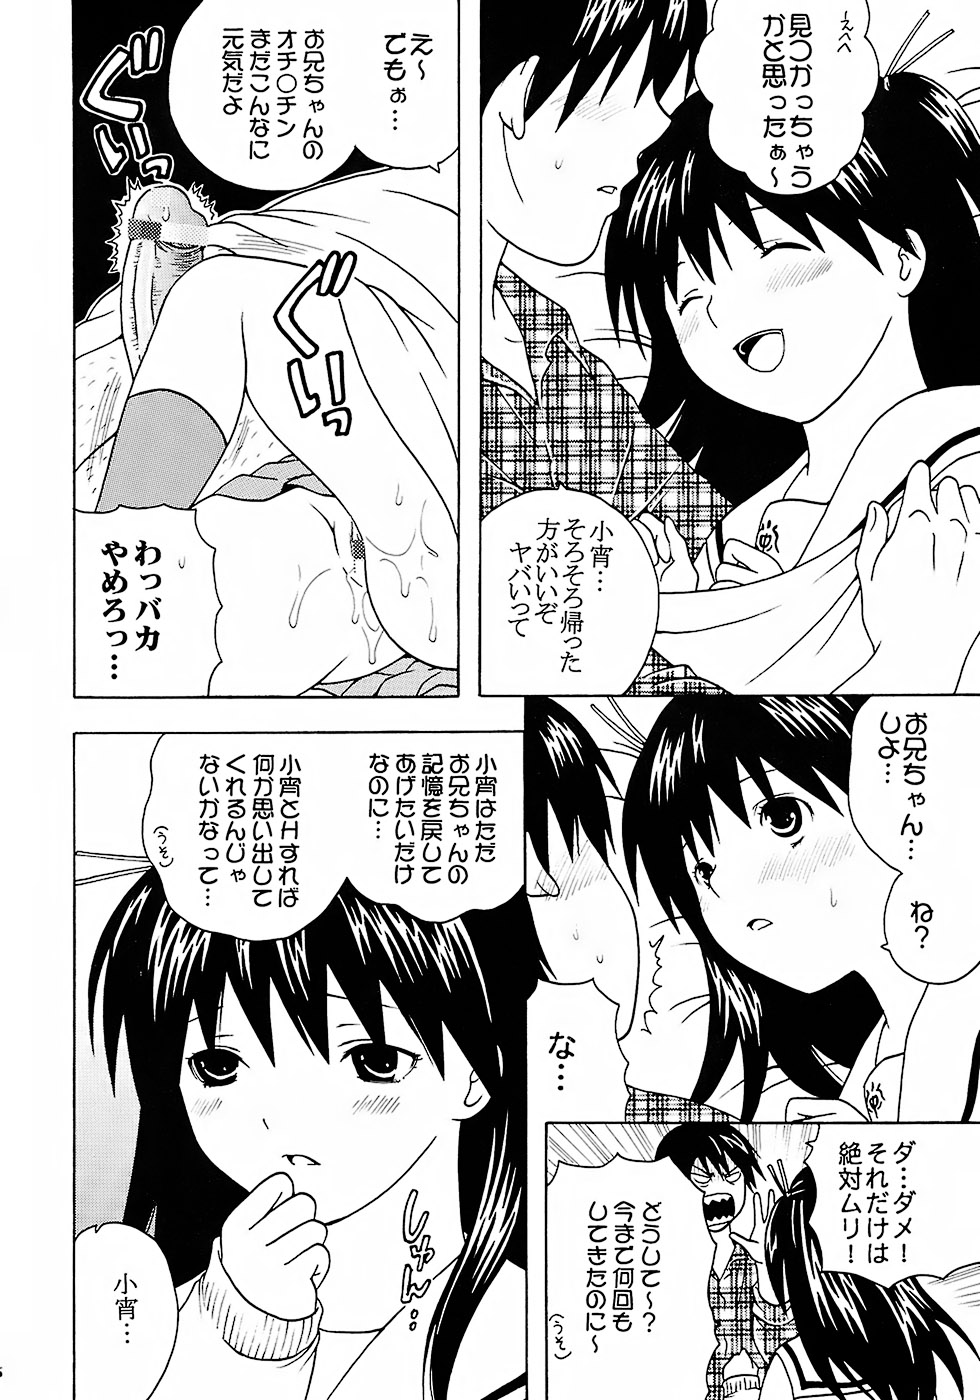 (C73) [St. Rio (Katana Kaji, Kitty, Purin)] Chitsui Gentei Nakadashi Limited vol.2 (Hatsukoi Gentei) page 27 full